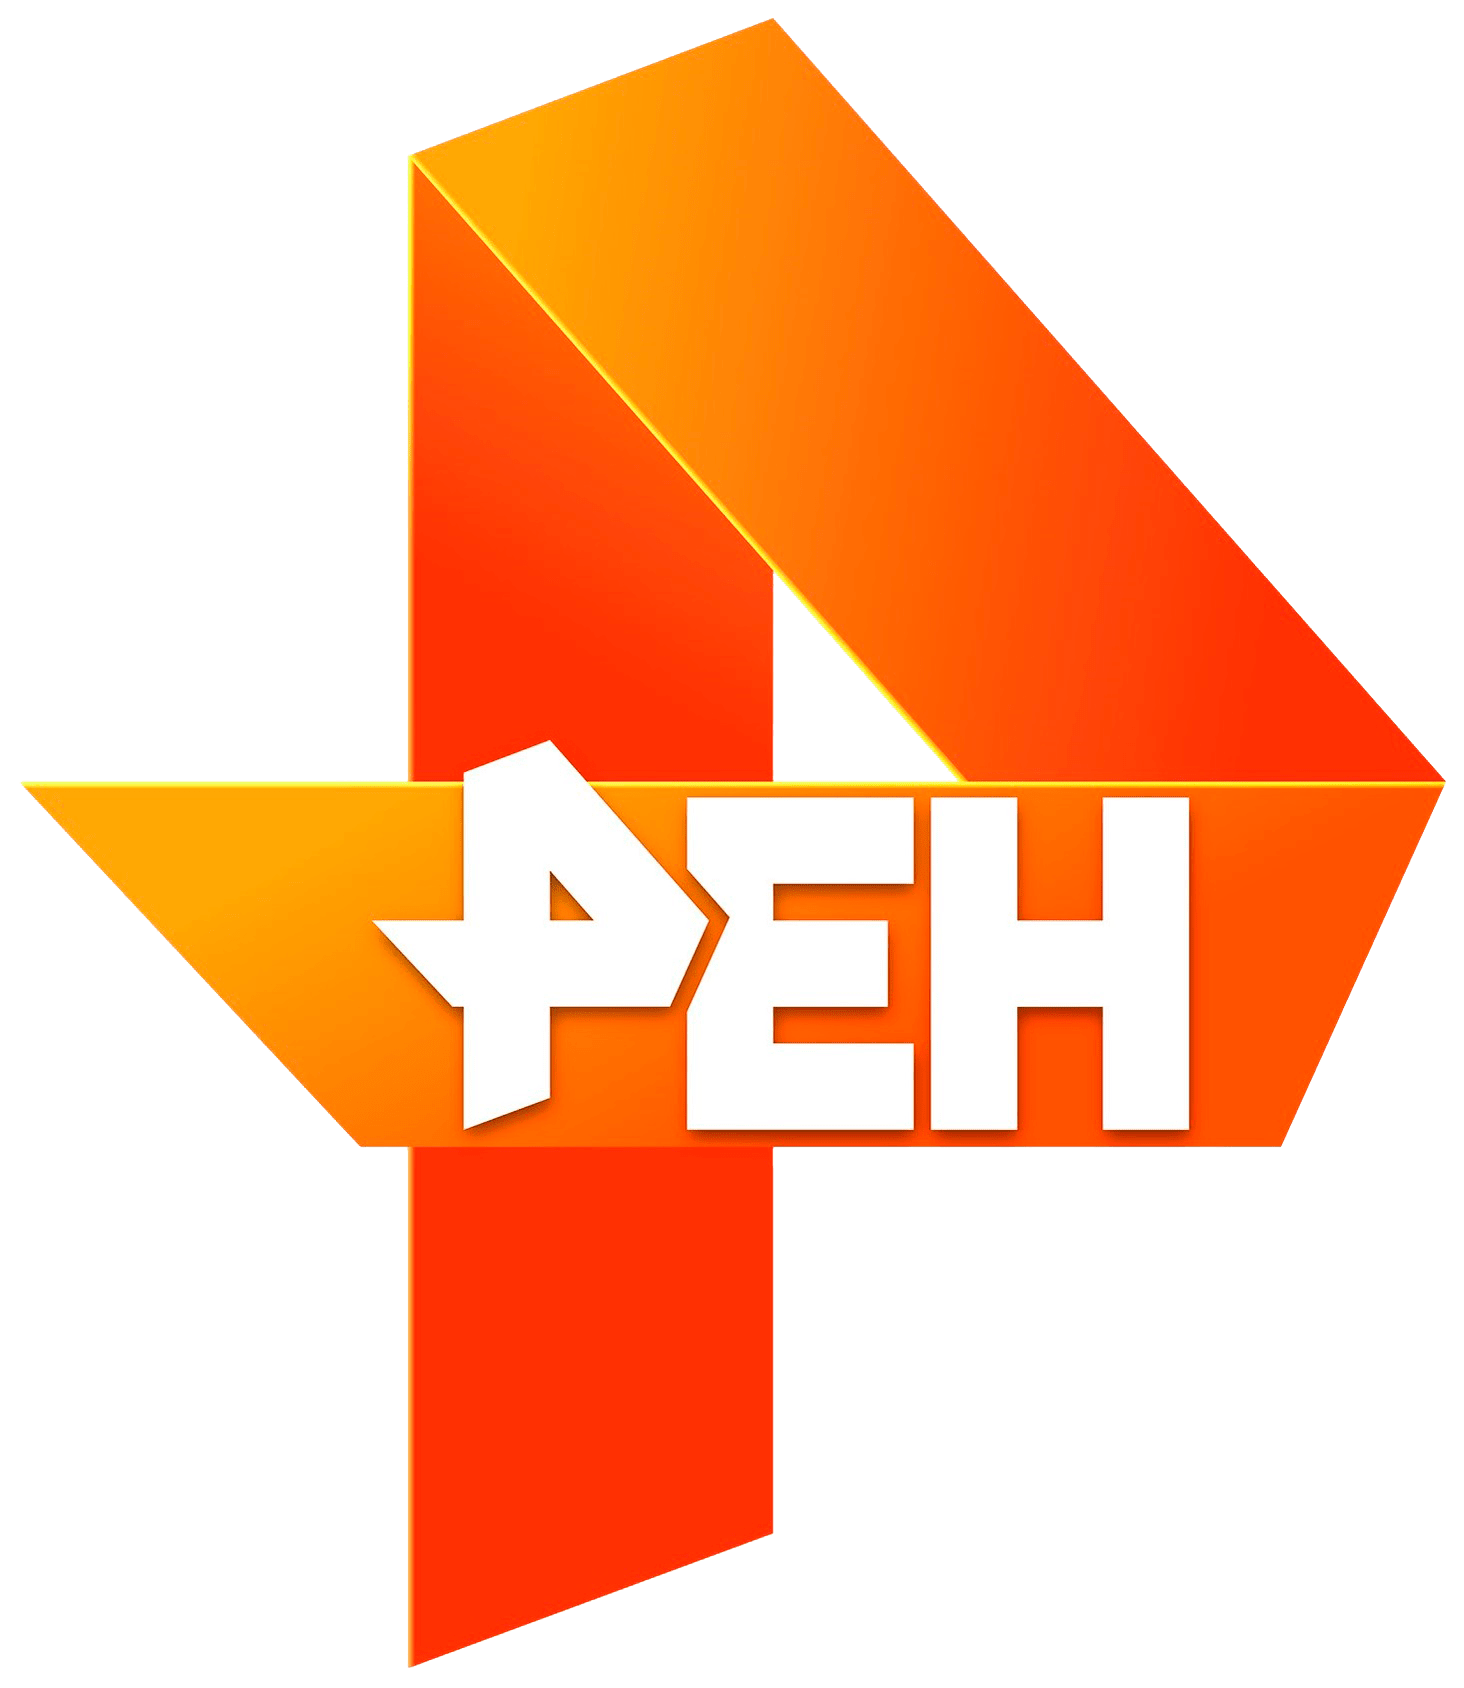 Раземщение рекламы РЕН ТВ, г.Нижний Новгород